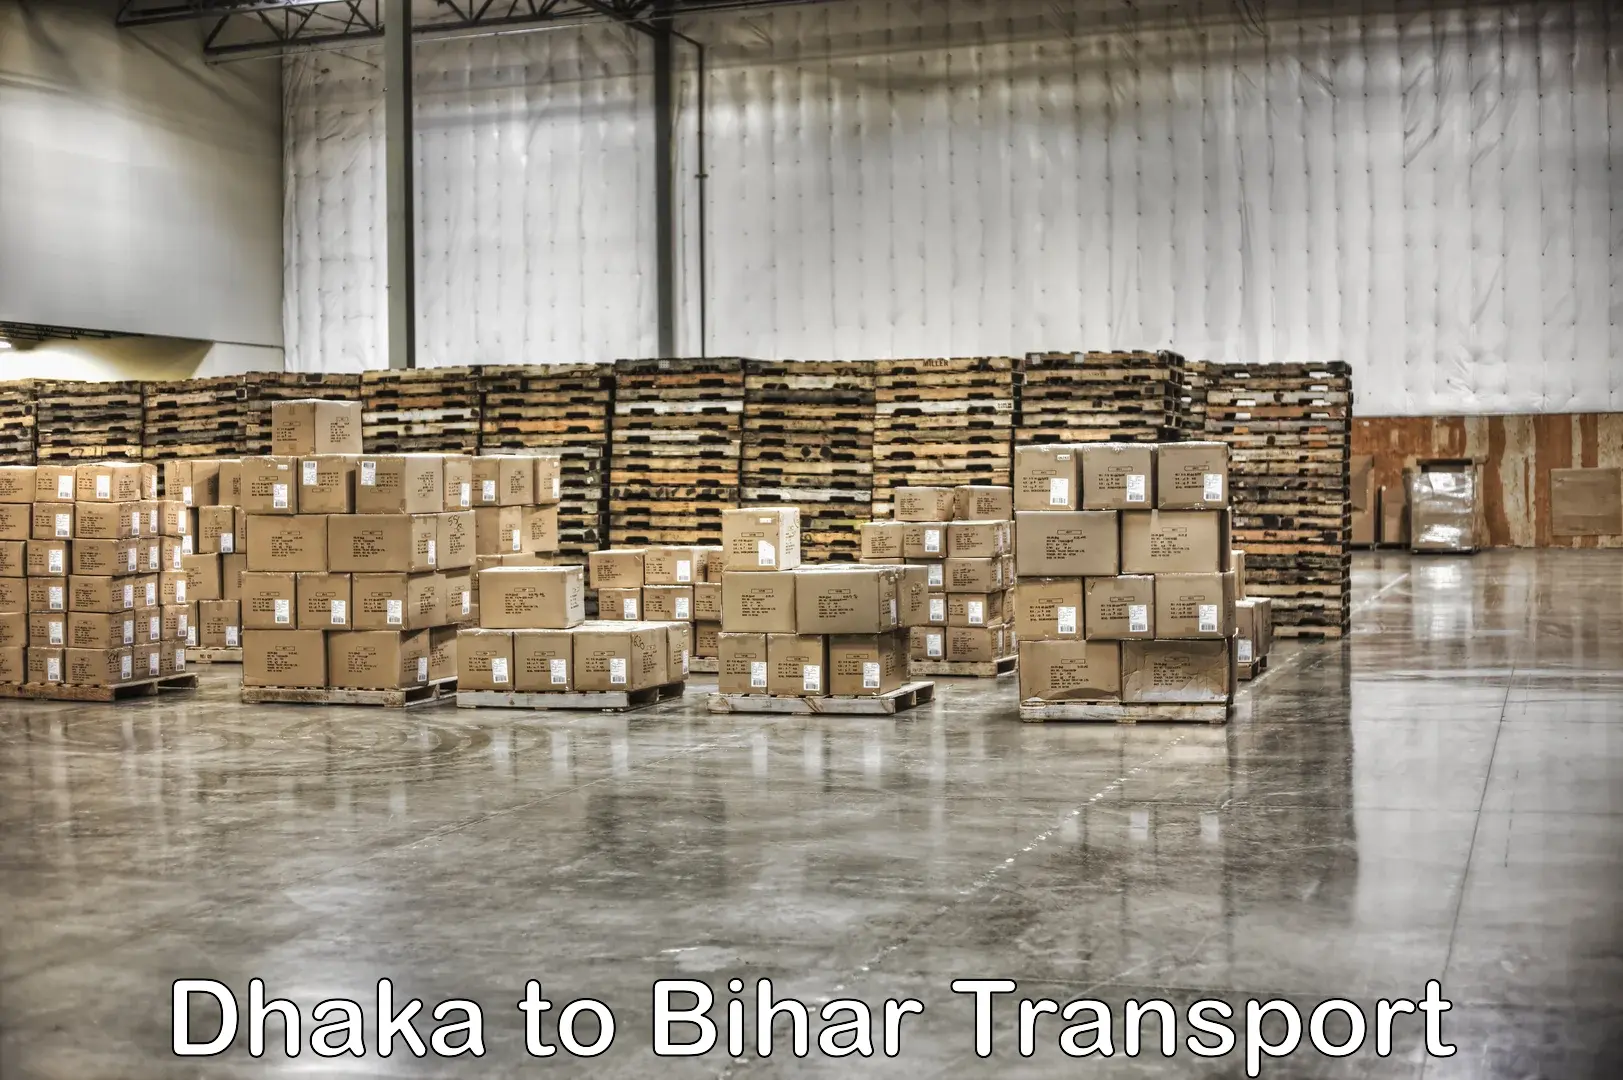 Furniture transport service Dhaka to Sirdala